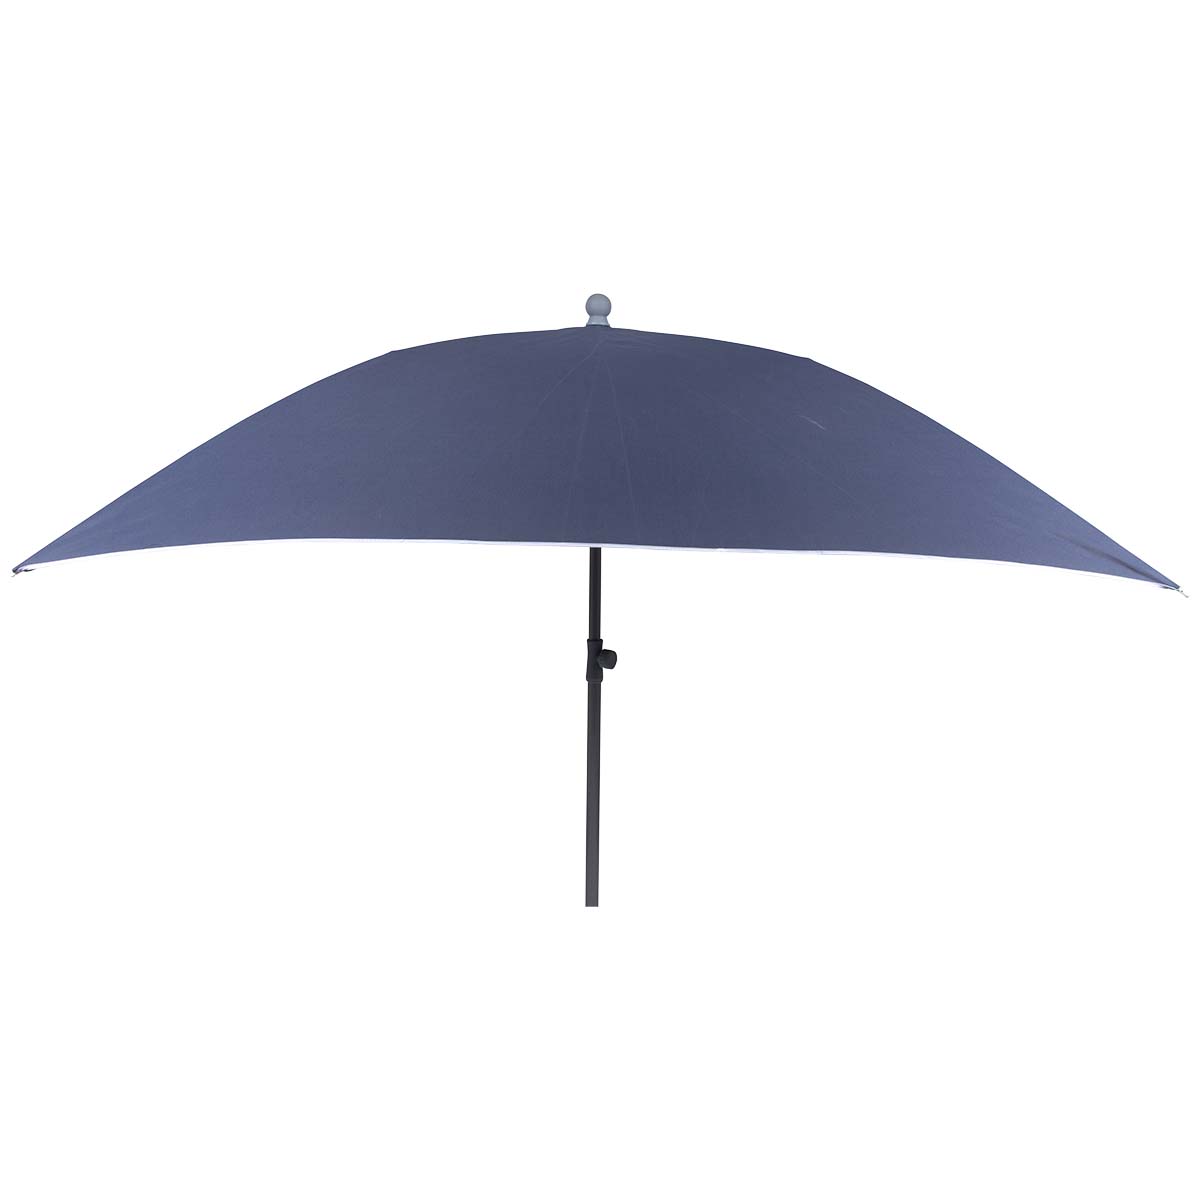 7267292 Een stevige vierkante parasol. Inclusief in hoogte verstelbare stalen steel voor in het zand, in een parasolvoet of in een tafelopening. Ideaal voor op het strand, op de camping of in de tuin. Voorzien van een stevig 160 gr/m² polyester doek. Bovendien zeer gemakkelijk mee te nemen (Ø 17x100 cm). De steel van de parasol heeft een diameter van 30 millimeter.